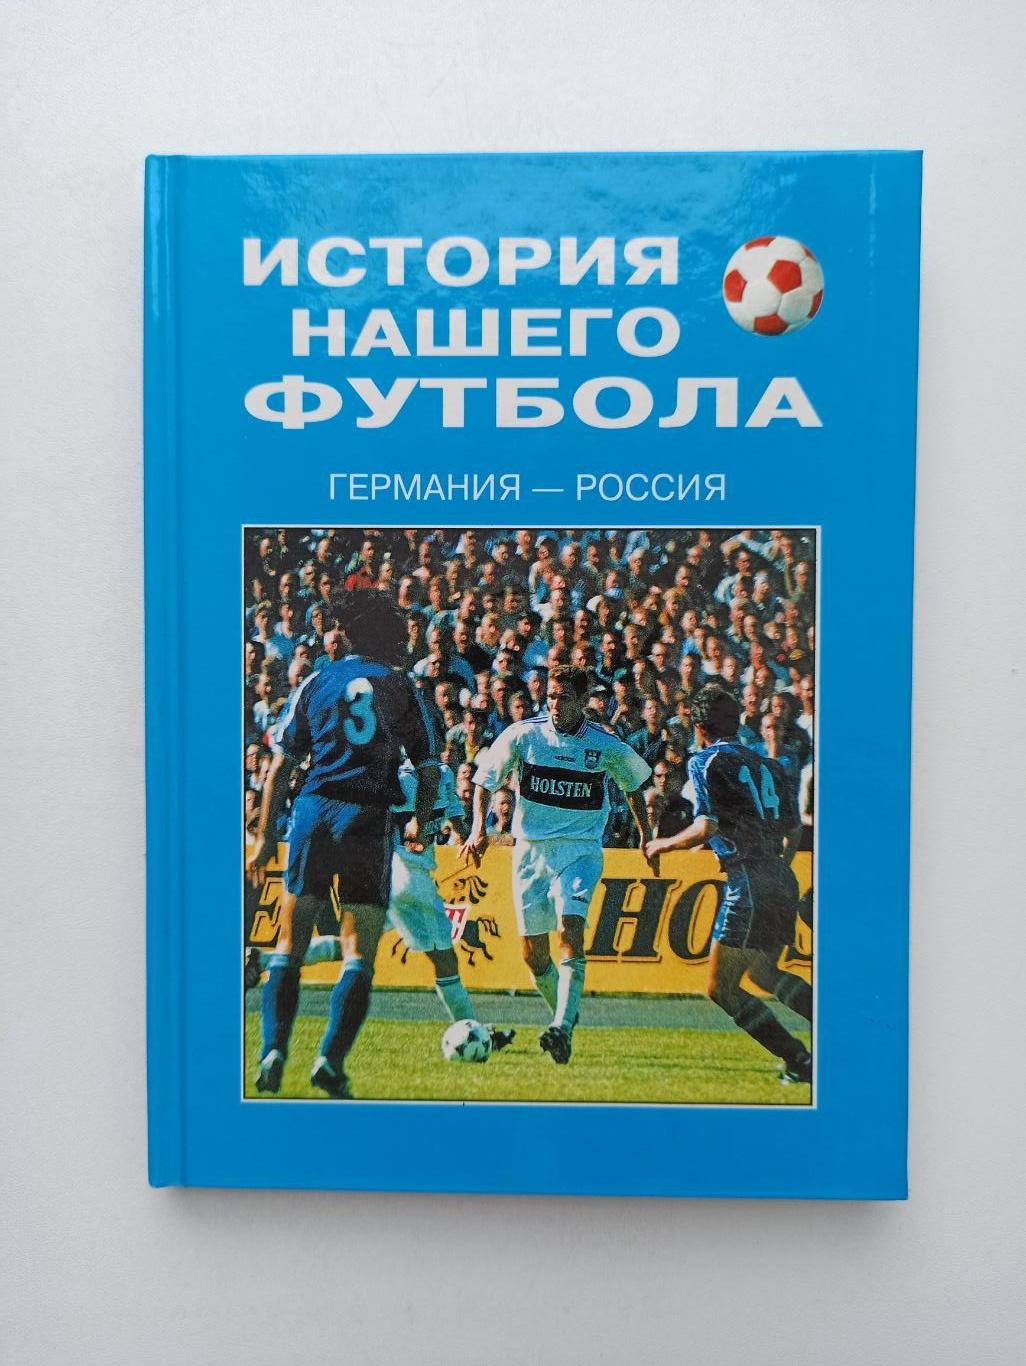 Футбол, История нашего футбола, Германия-Россия, Калининград, 2000г.